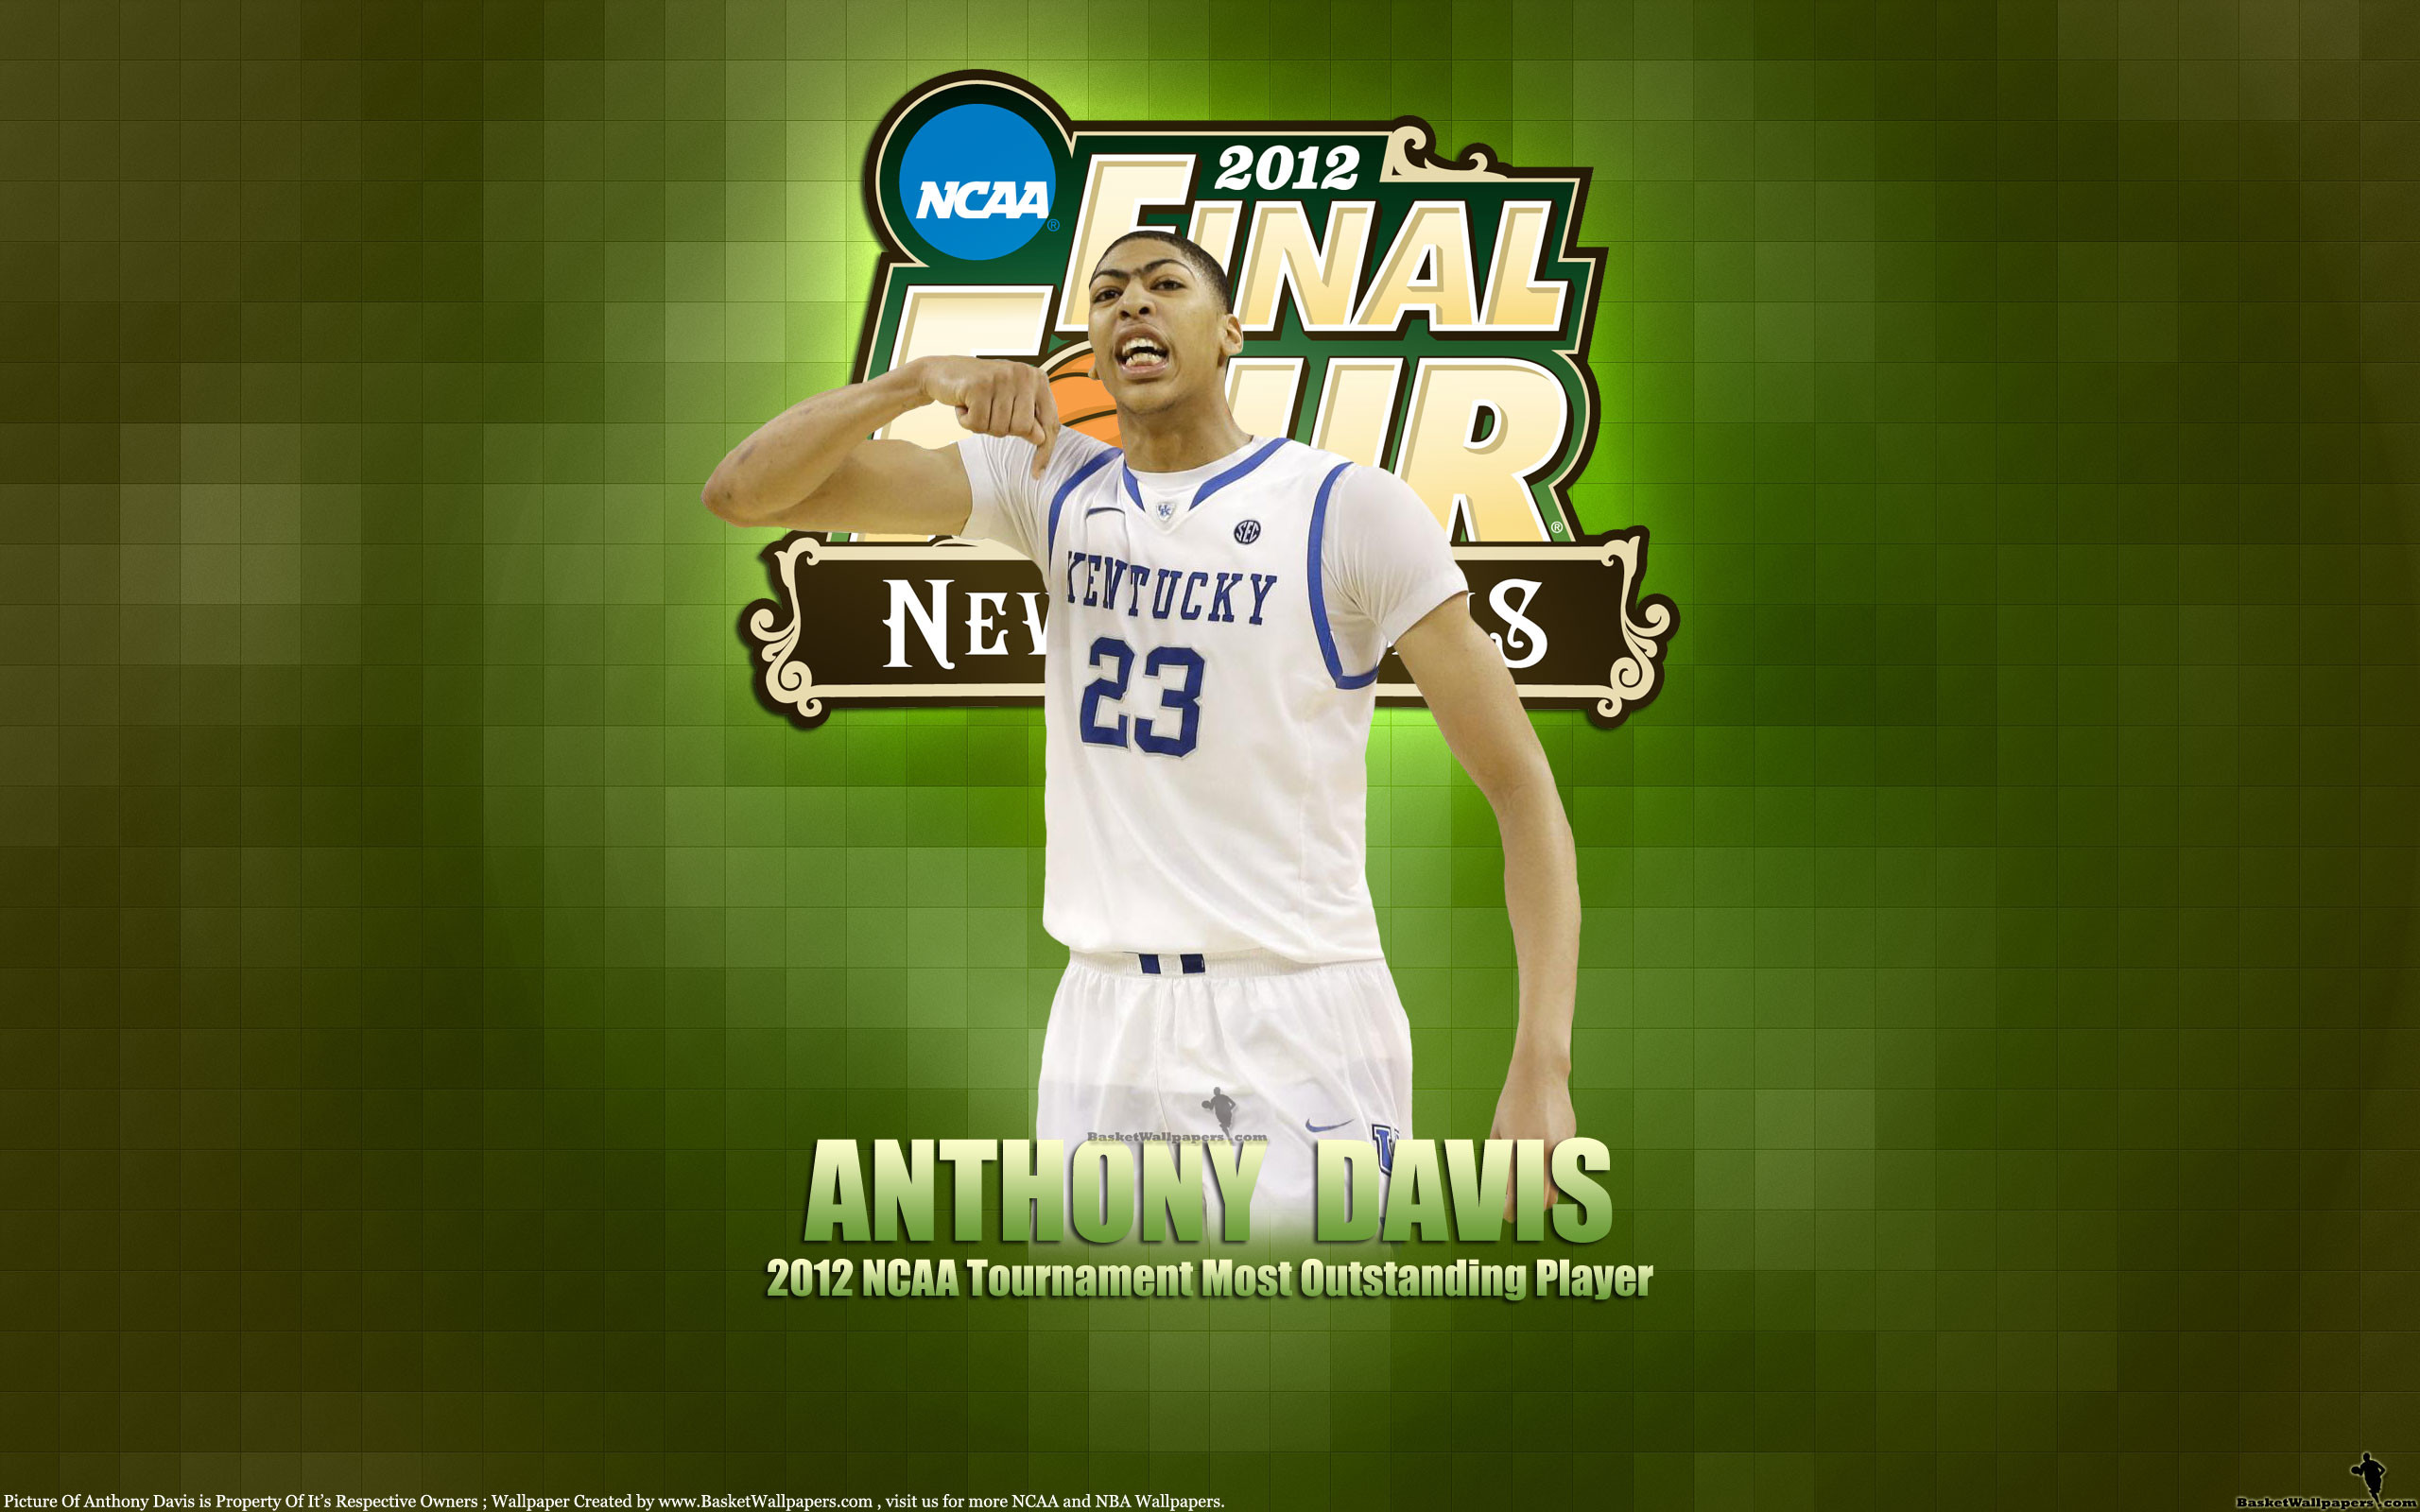 2560x1600 Anthony Davis 2012 NCAA Final Four 2560Ã1600 Wallpaper